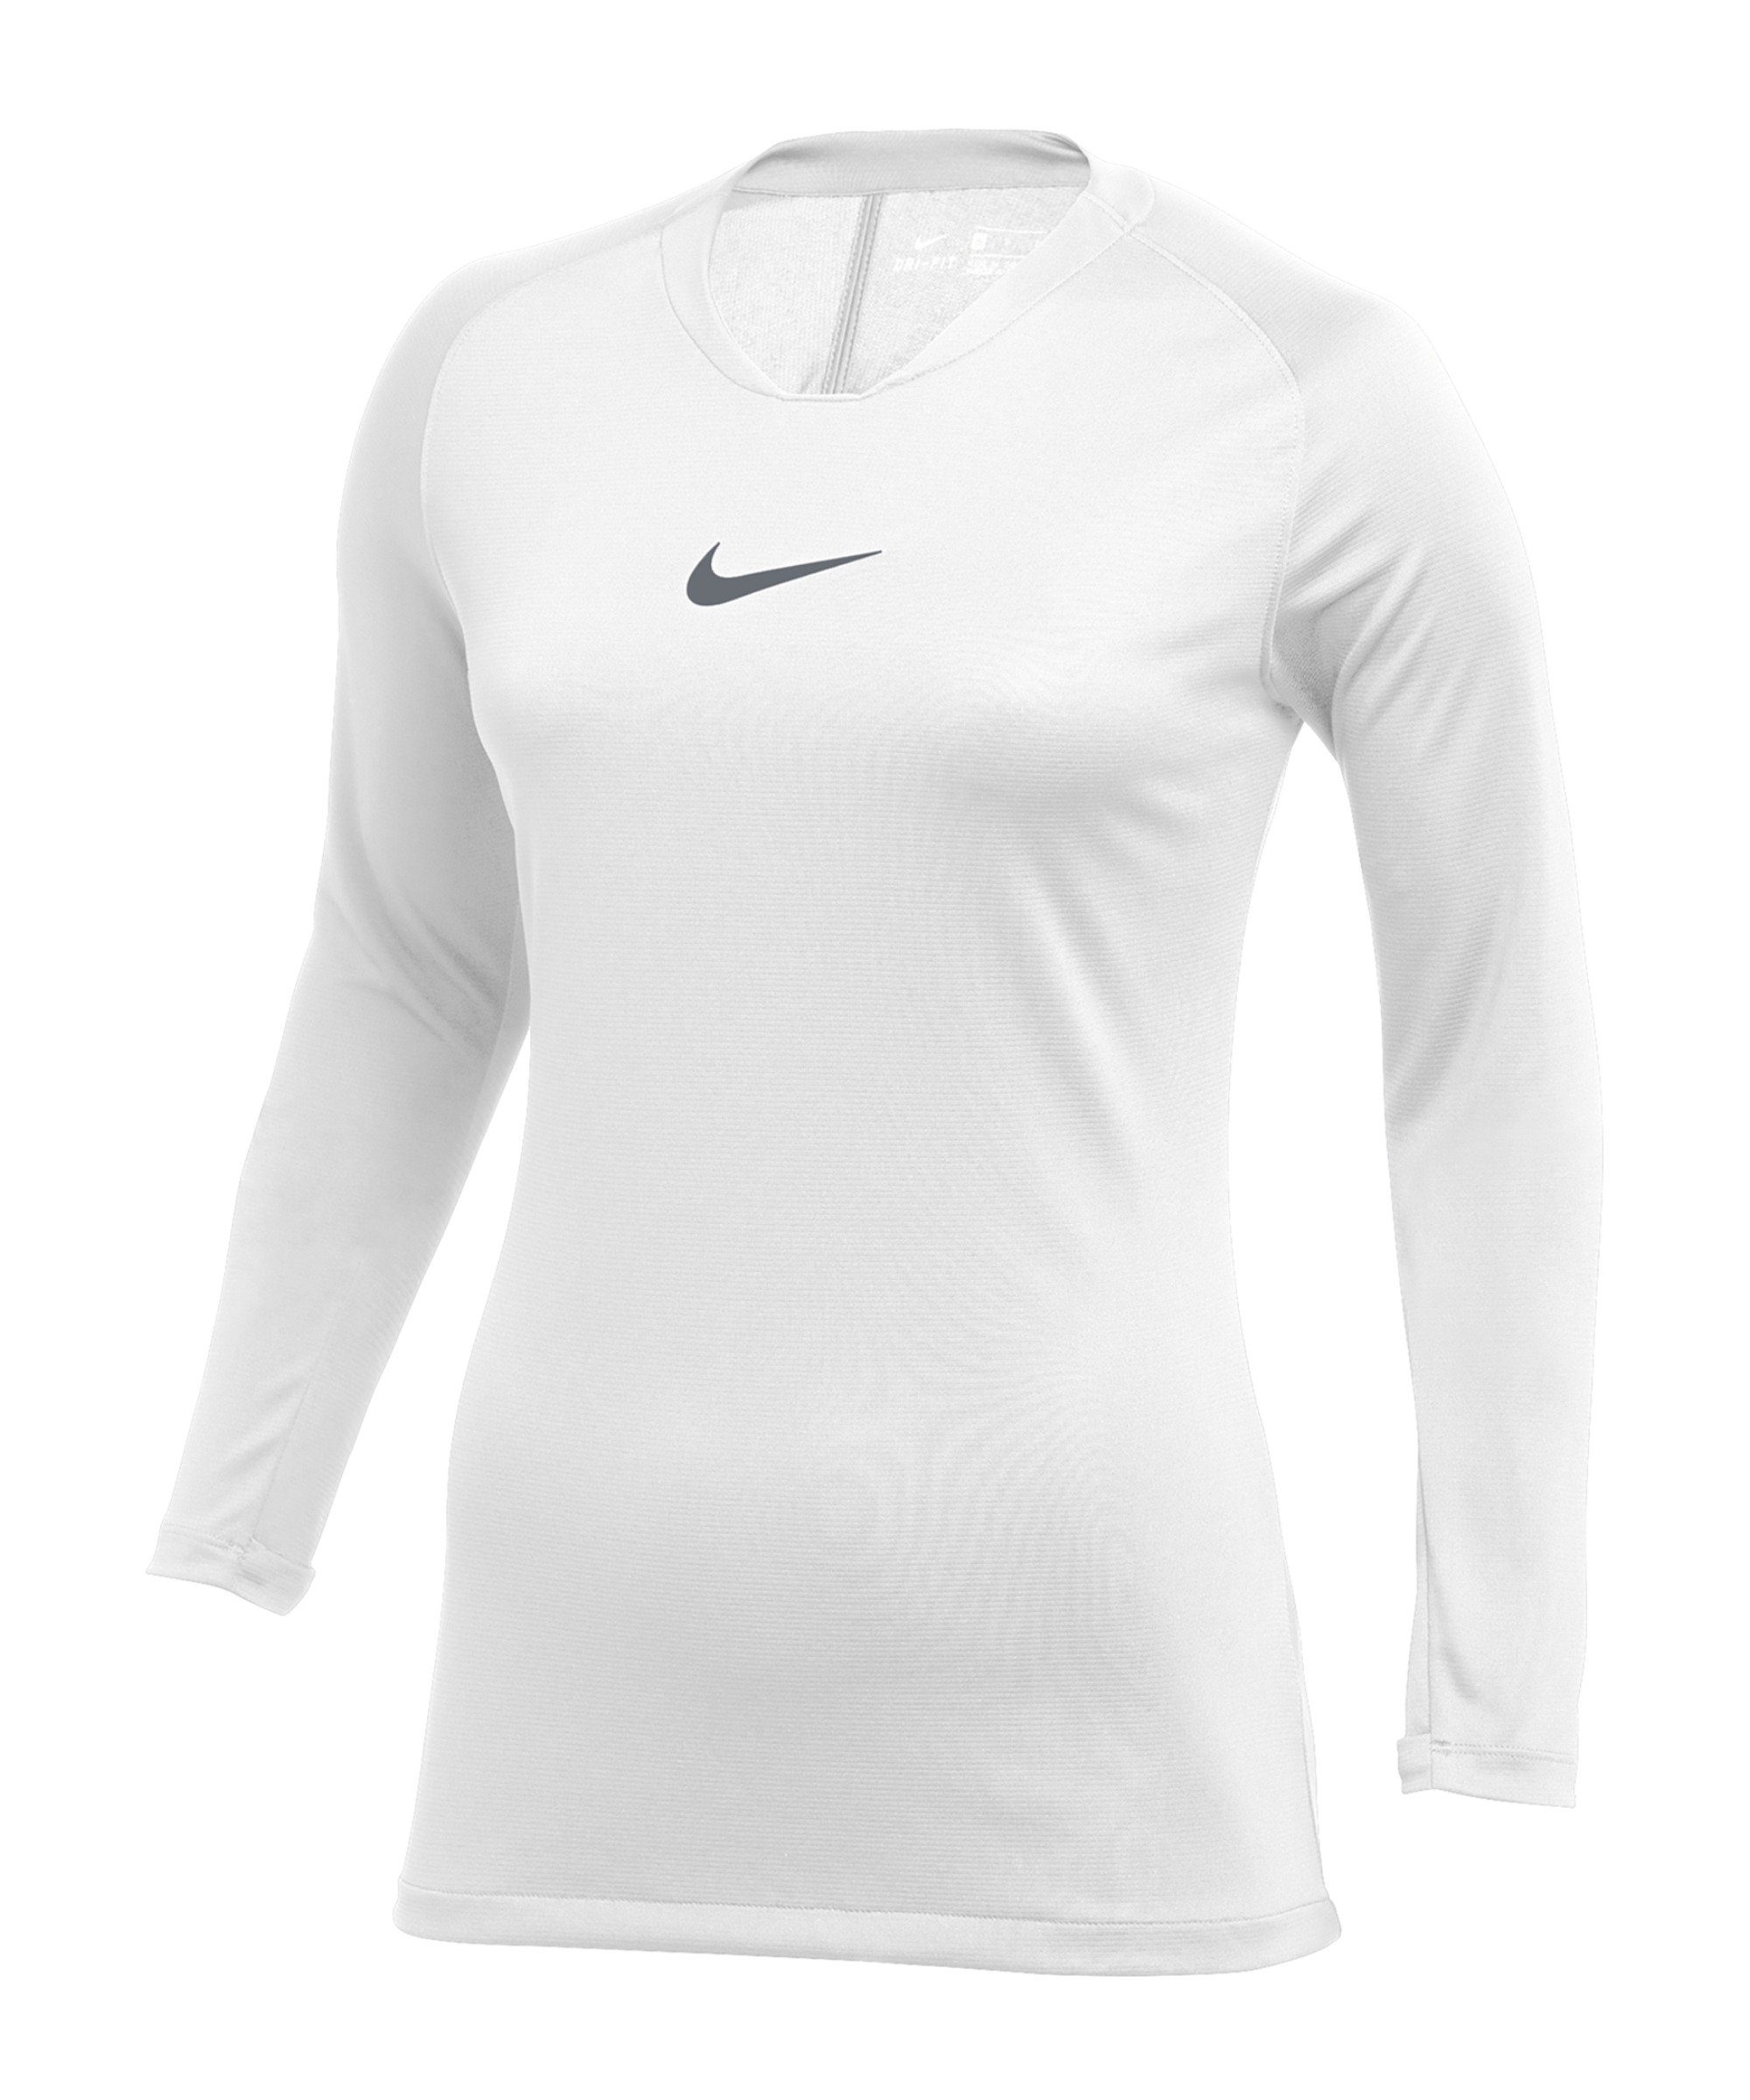 Park Nike Layer Damen weissgrau default Funktionsshirt First